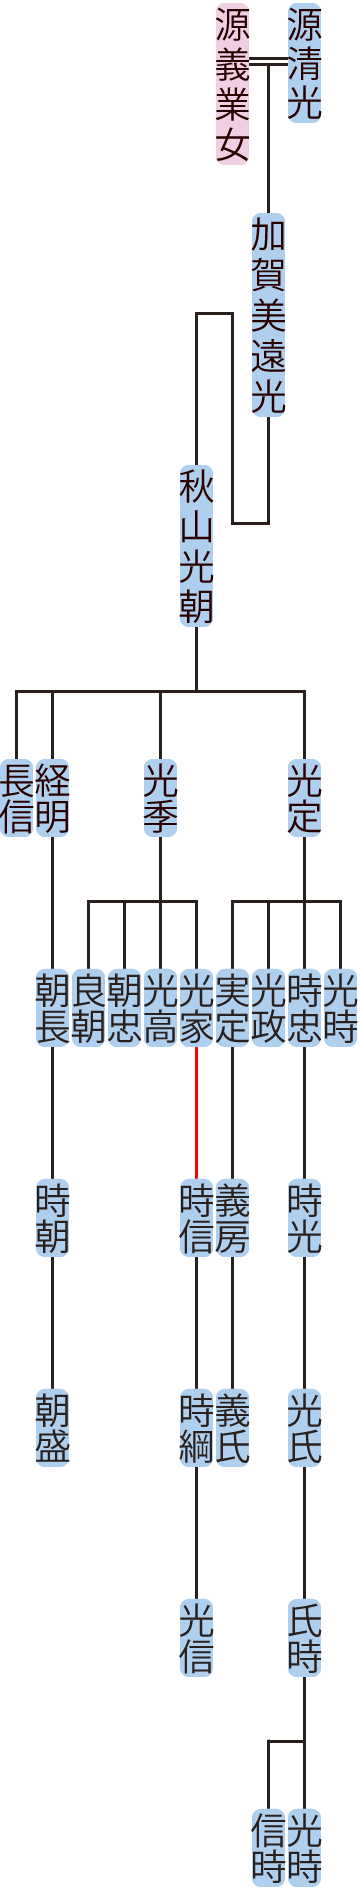 秋山光朝の系図